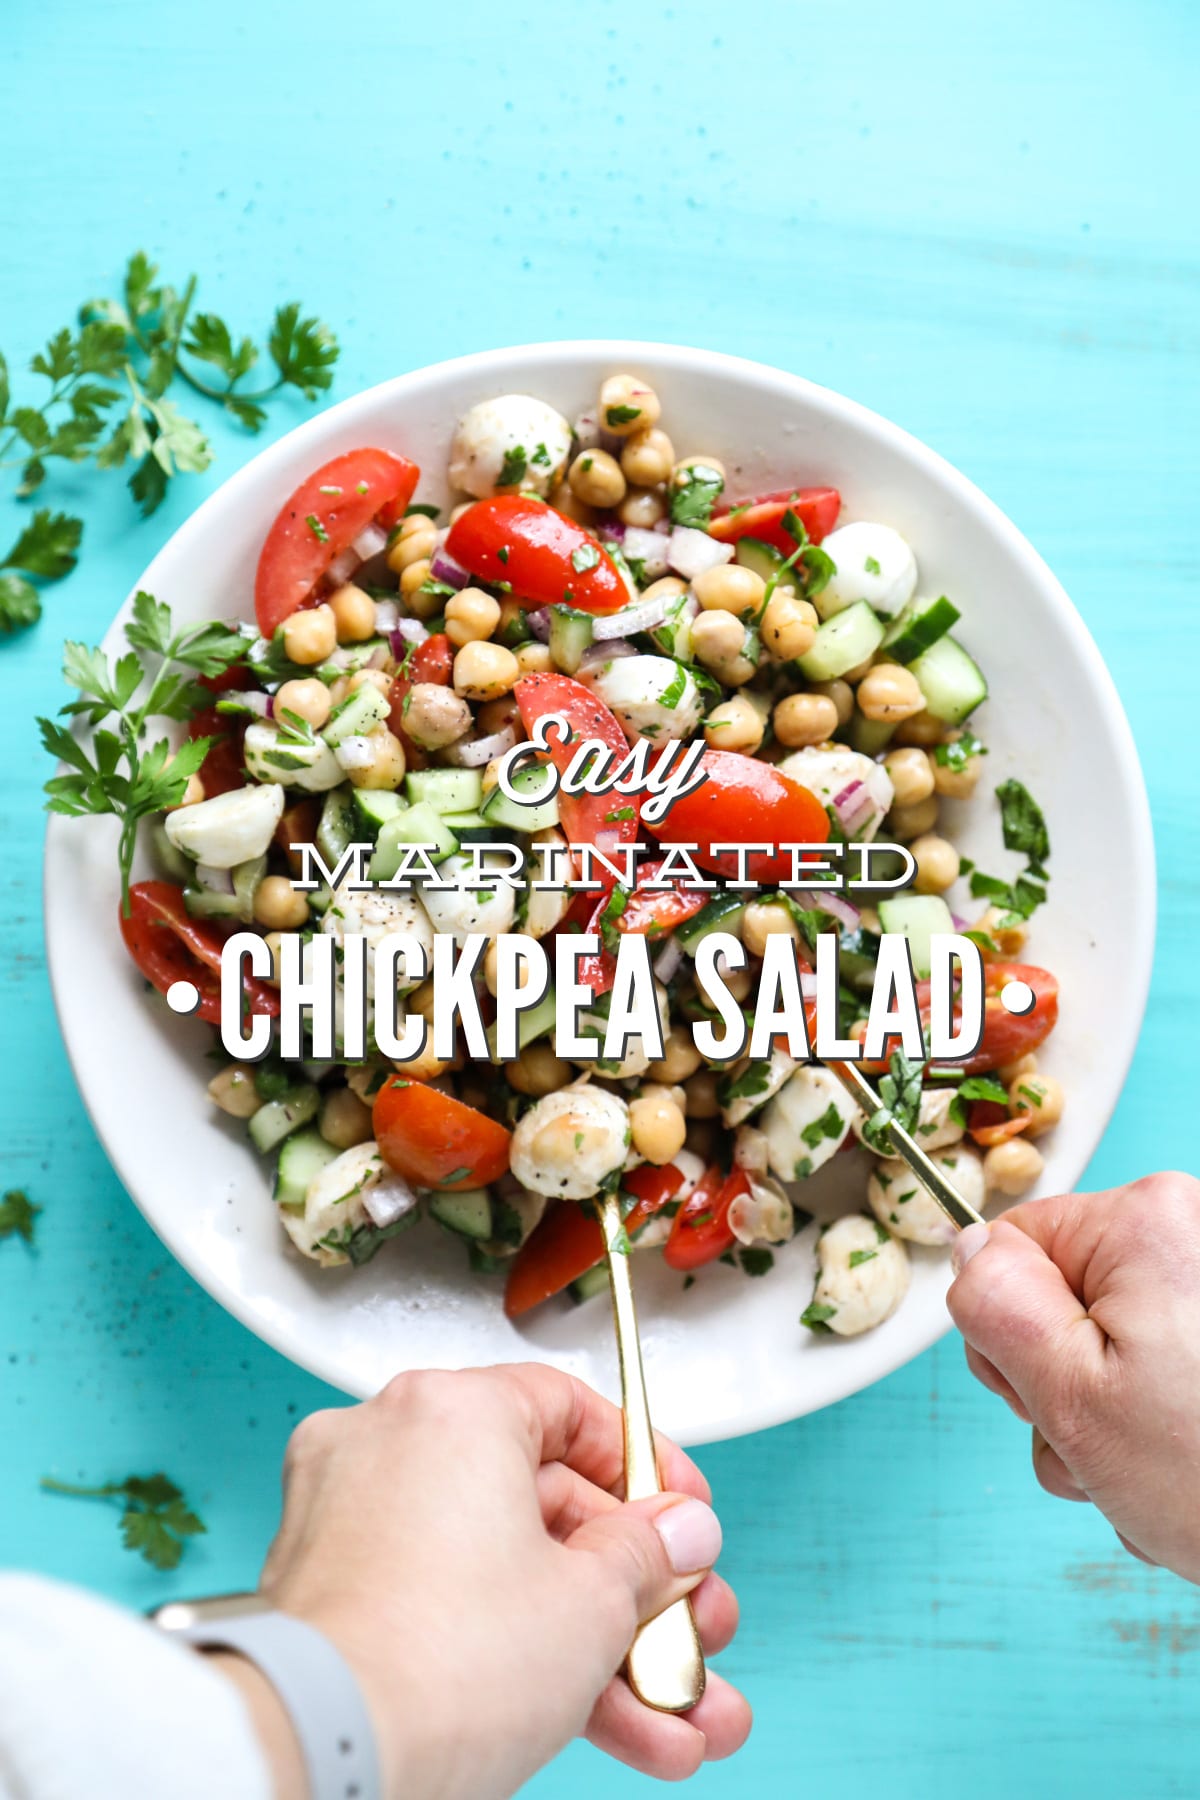 Easy Marinated Chickpea Salad